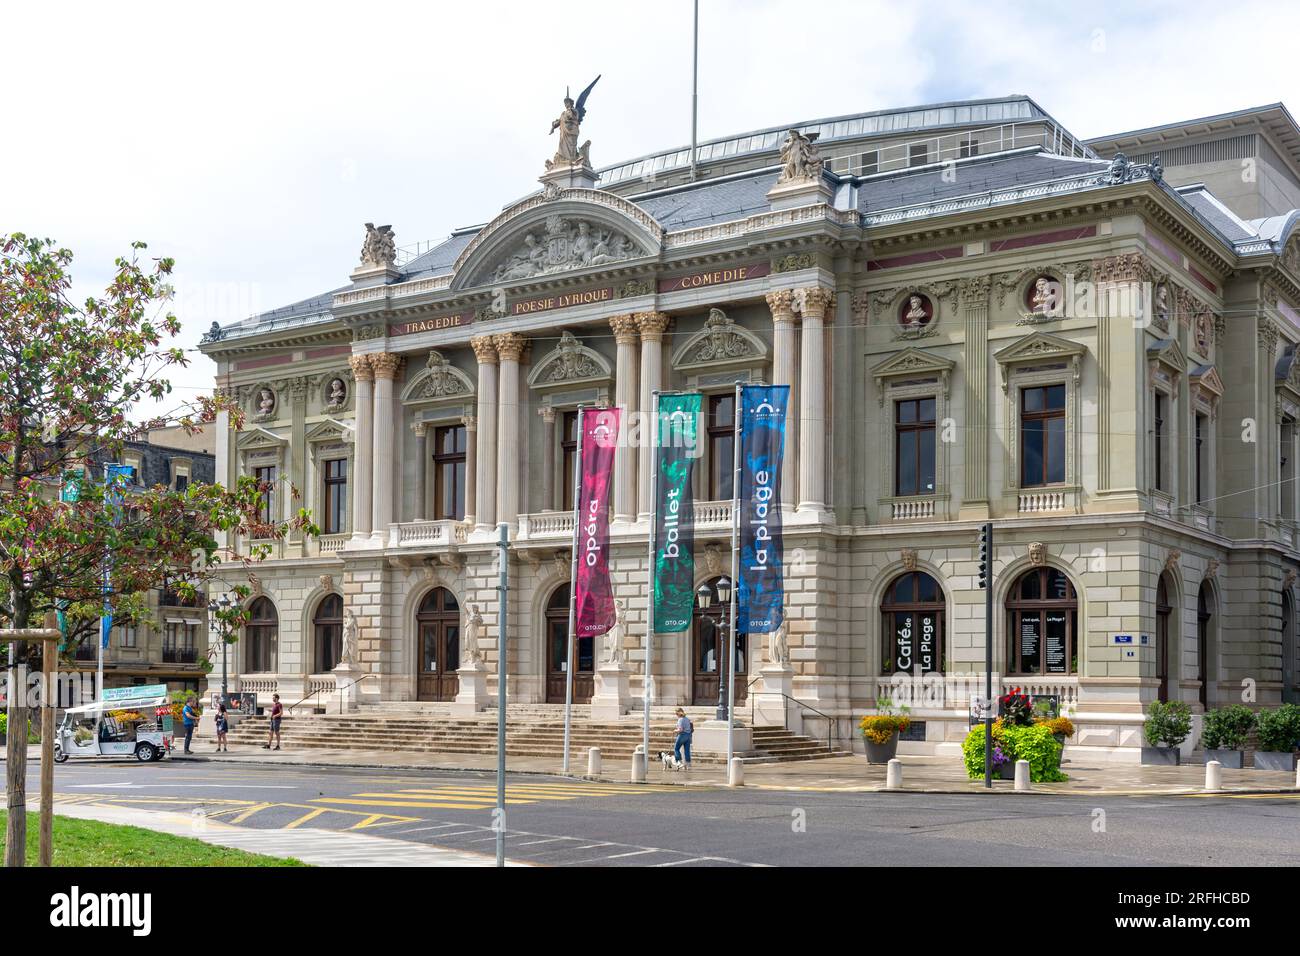 Grand Théâtre de Genève (performing arts theatre), Place de Neuve, Vieille-Ville, Geneva (Genève) Canton of Geneva, Switzerland Stock Photo